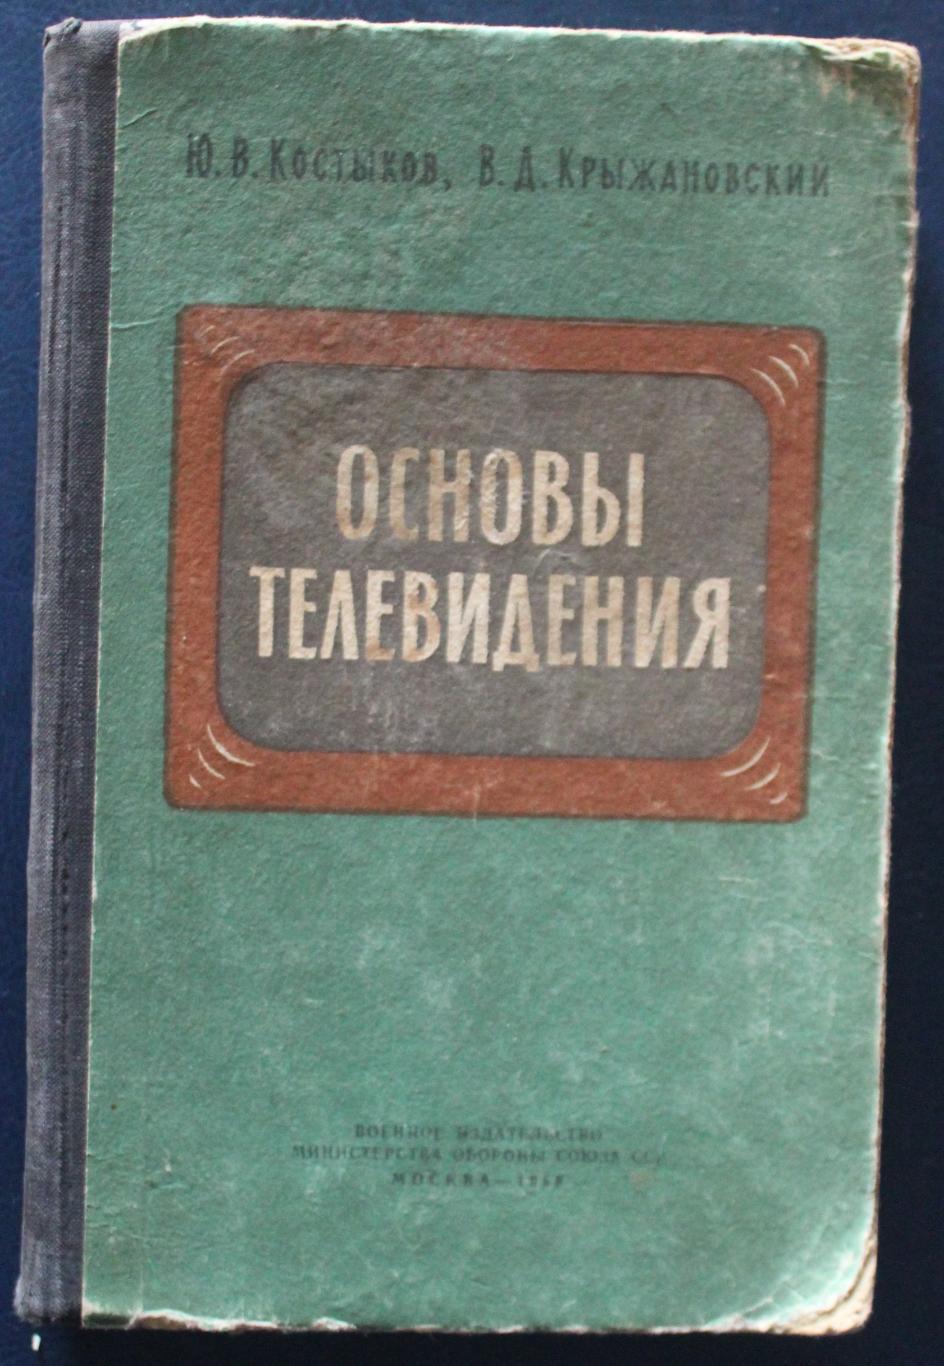 Ю.Костыков, В.Крыжановский Основы телевидения 1959